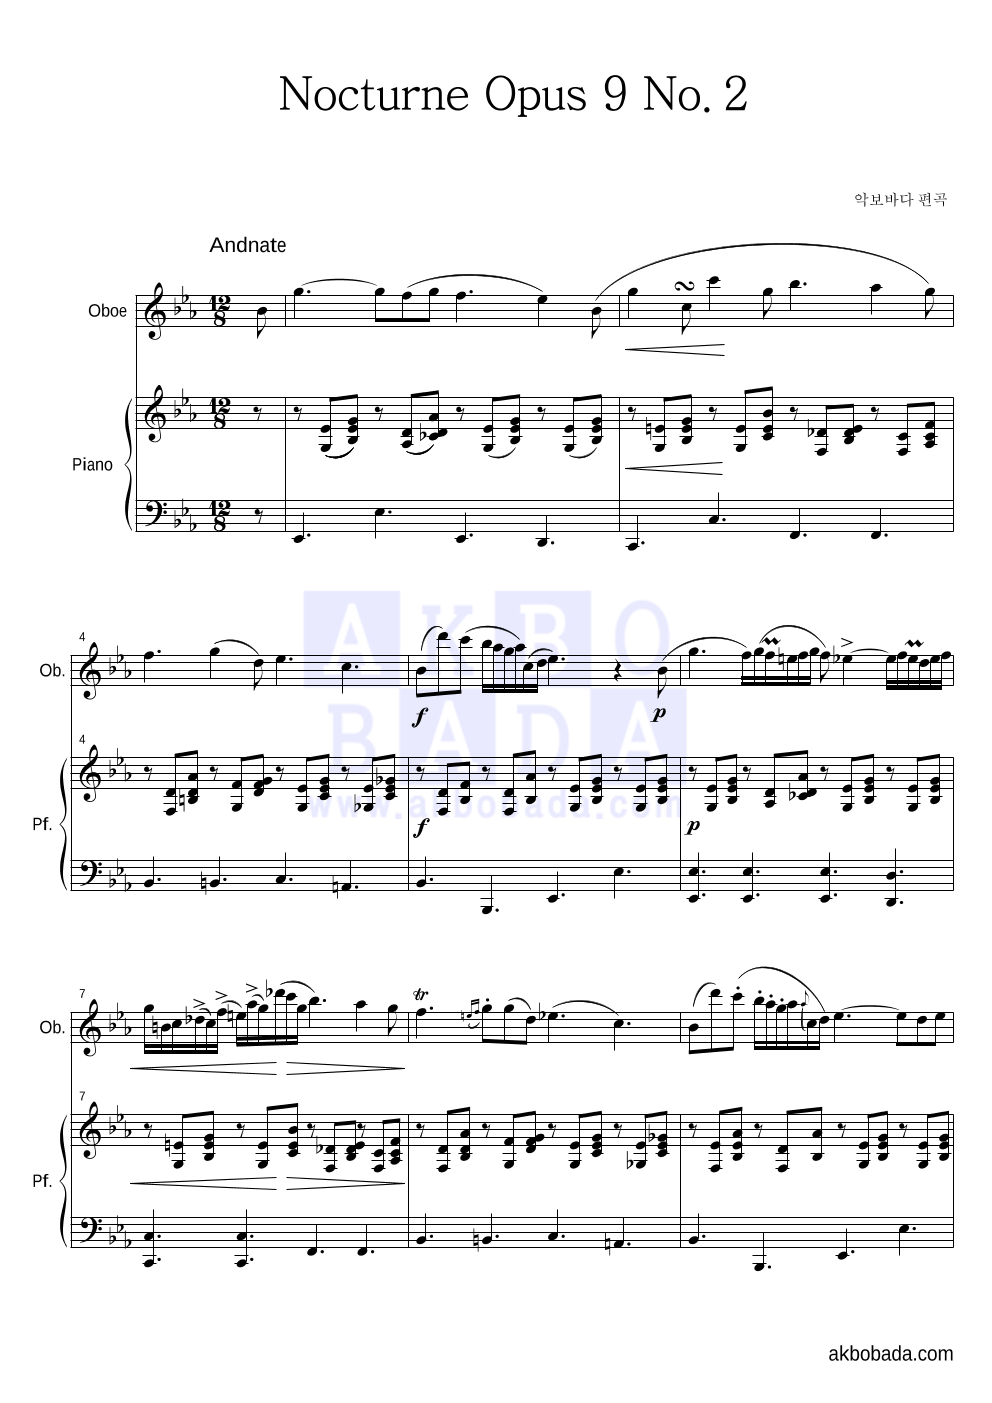 쇼팽 - Nocturne No.2 In E Flat Major Op.9-2 (야상곡 2번 내림 마장조) 오보에&피아노 악보 